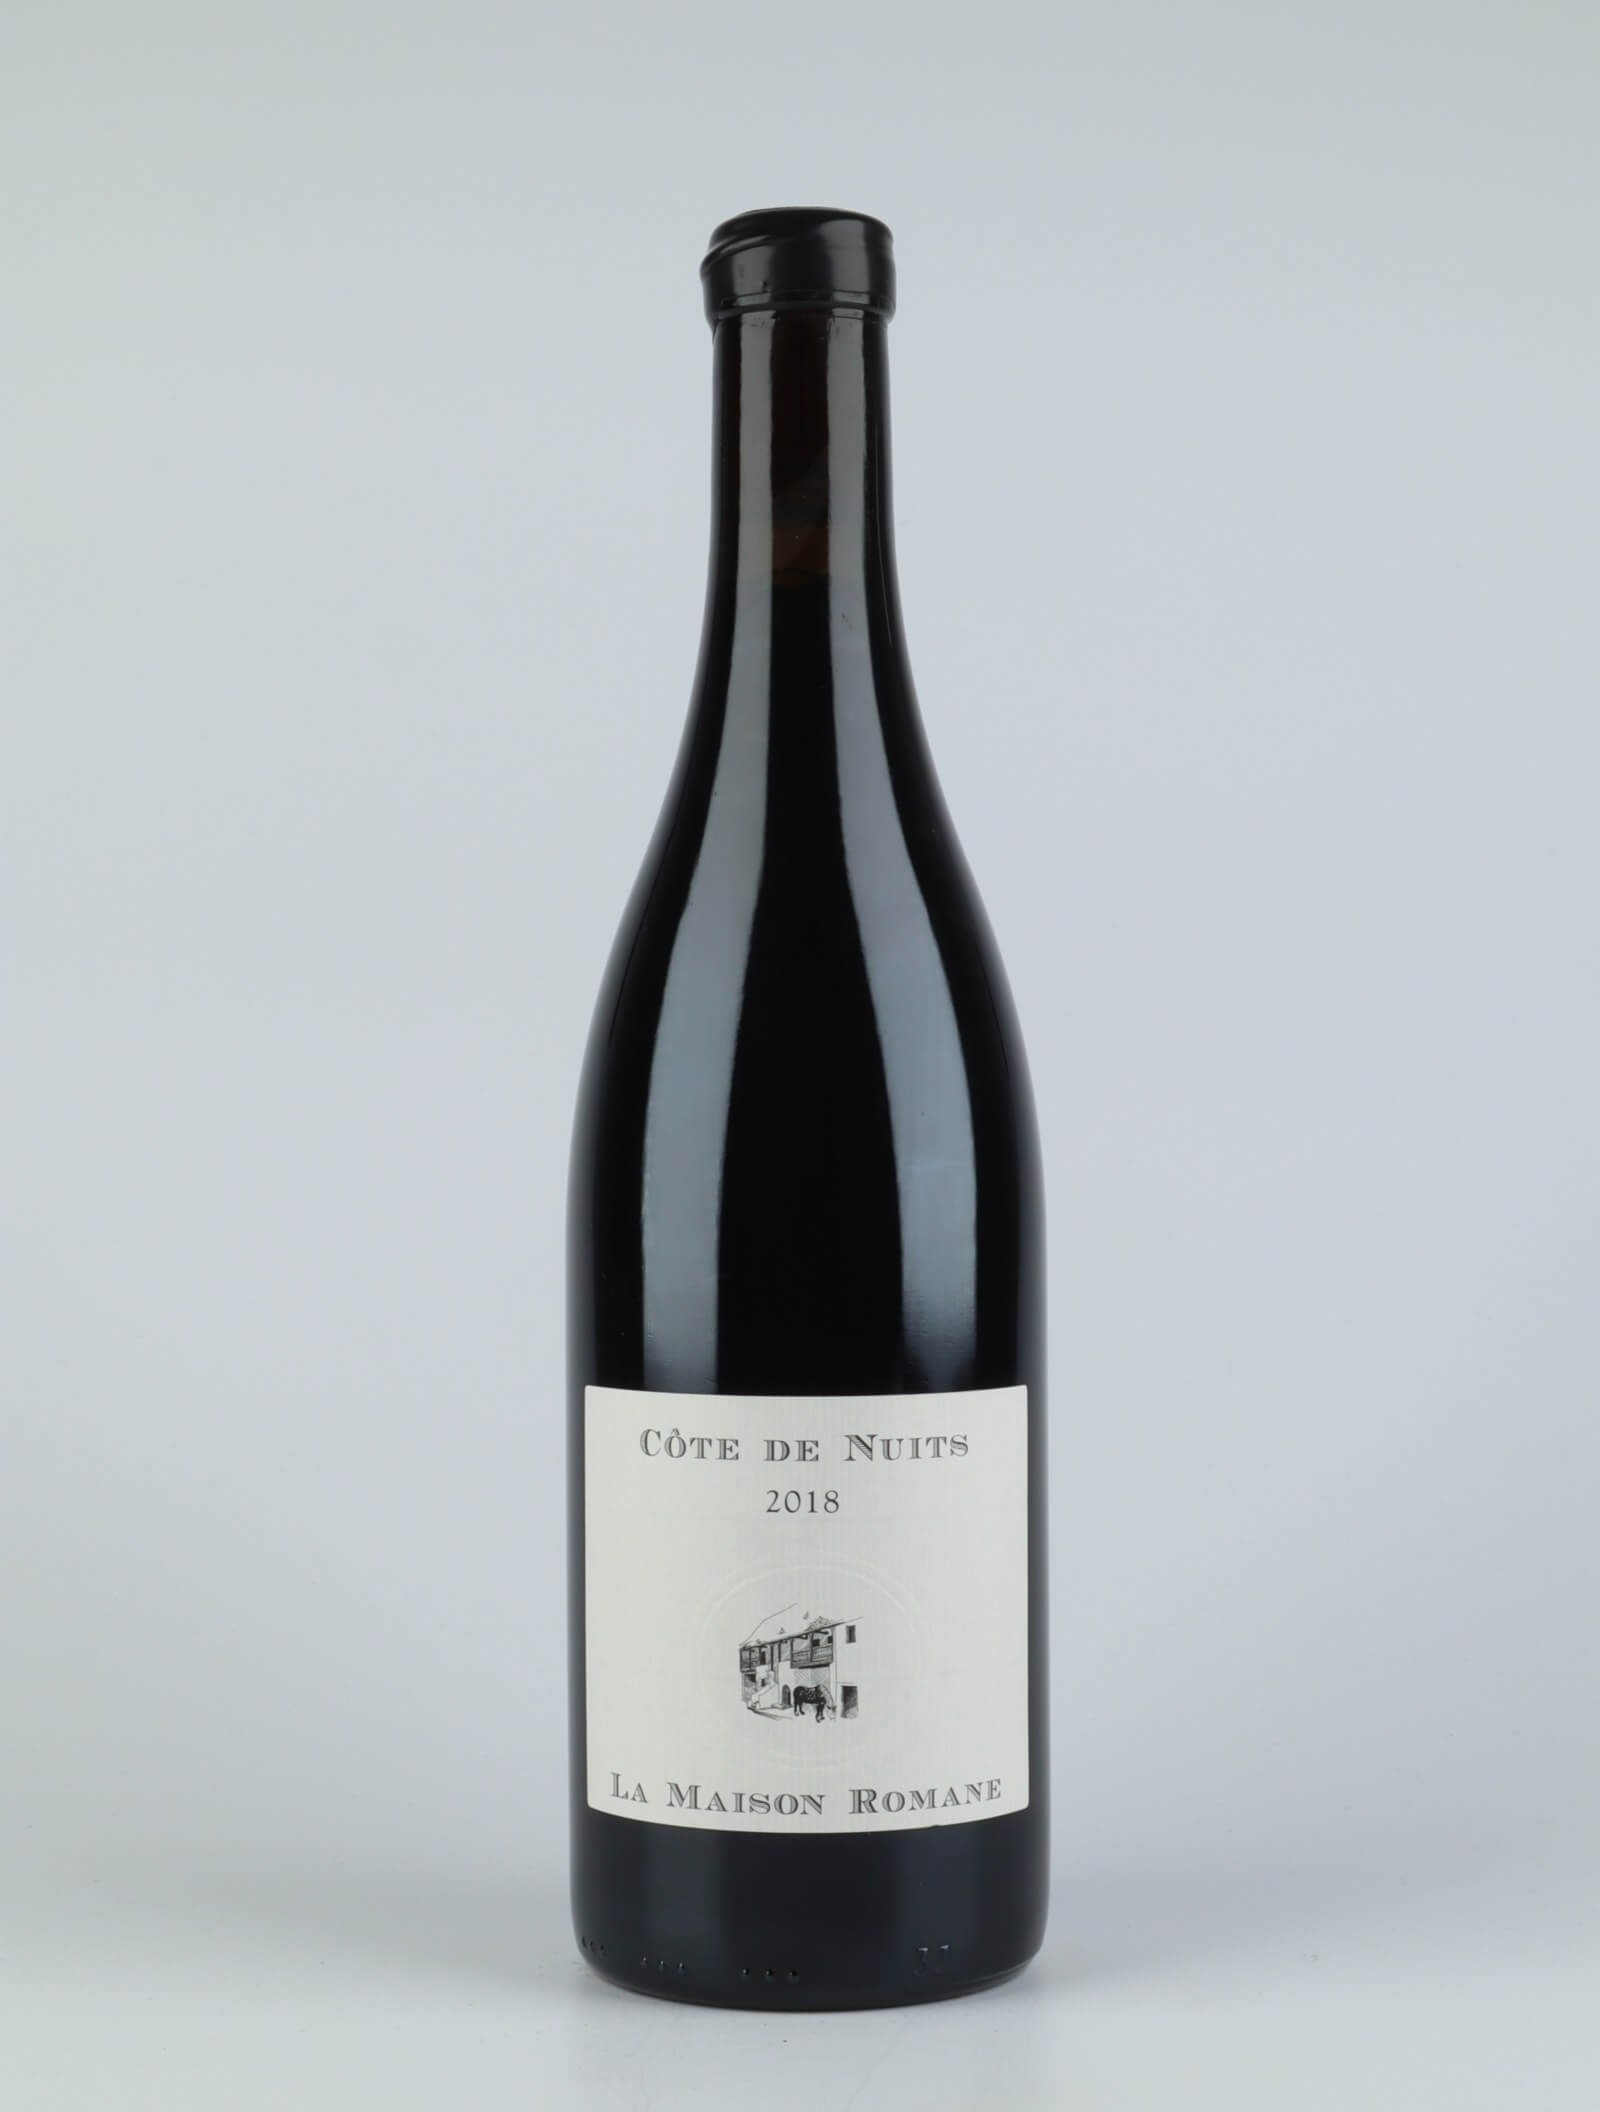 A bottle 2018 Côtes de Nuits Villages Red wine from La Maison Romane, Burgundy in France